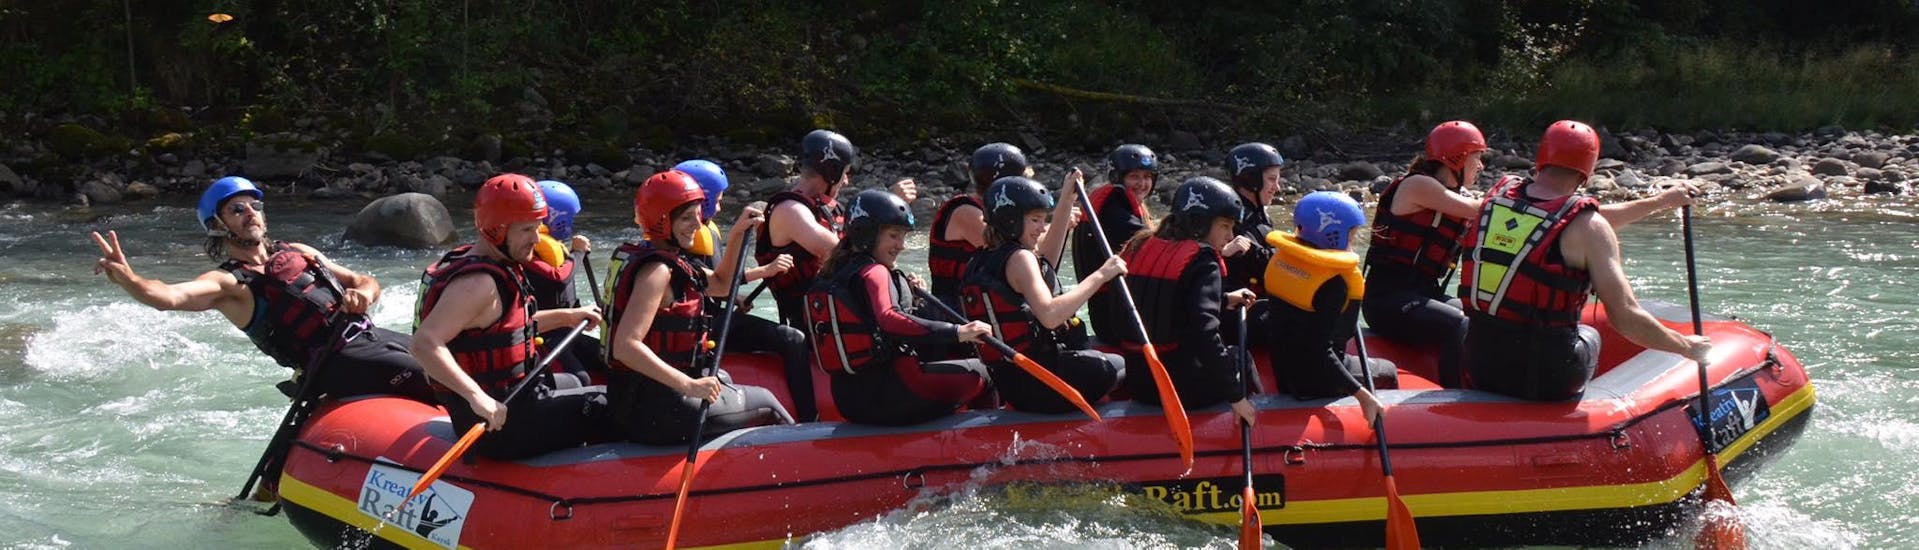 Rafting auf der Rienz - Gruppen (15-40 Pax) Action & Safety.